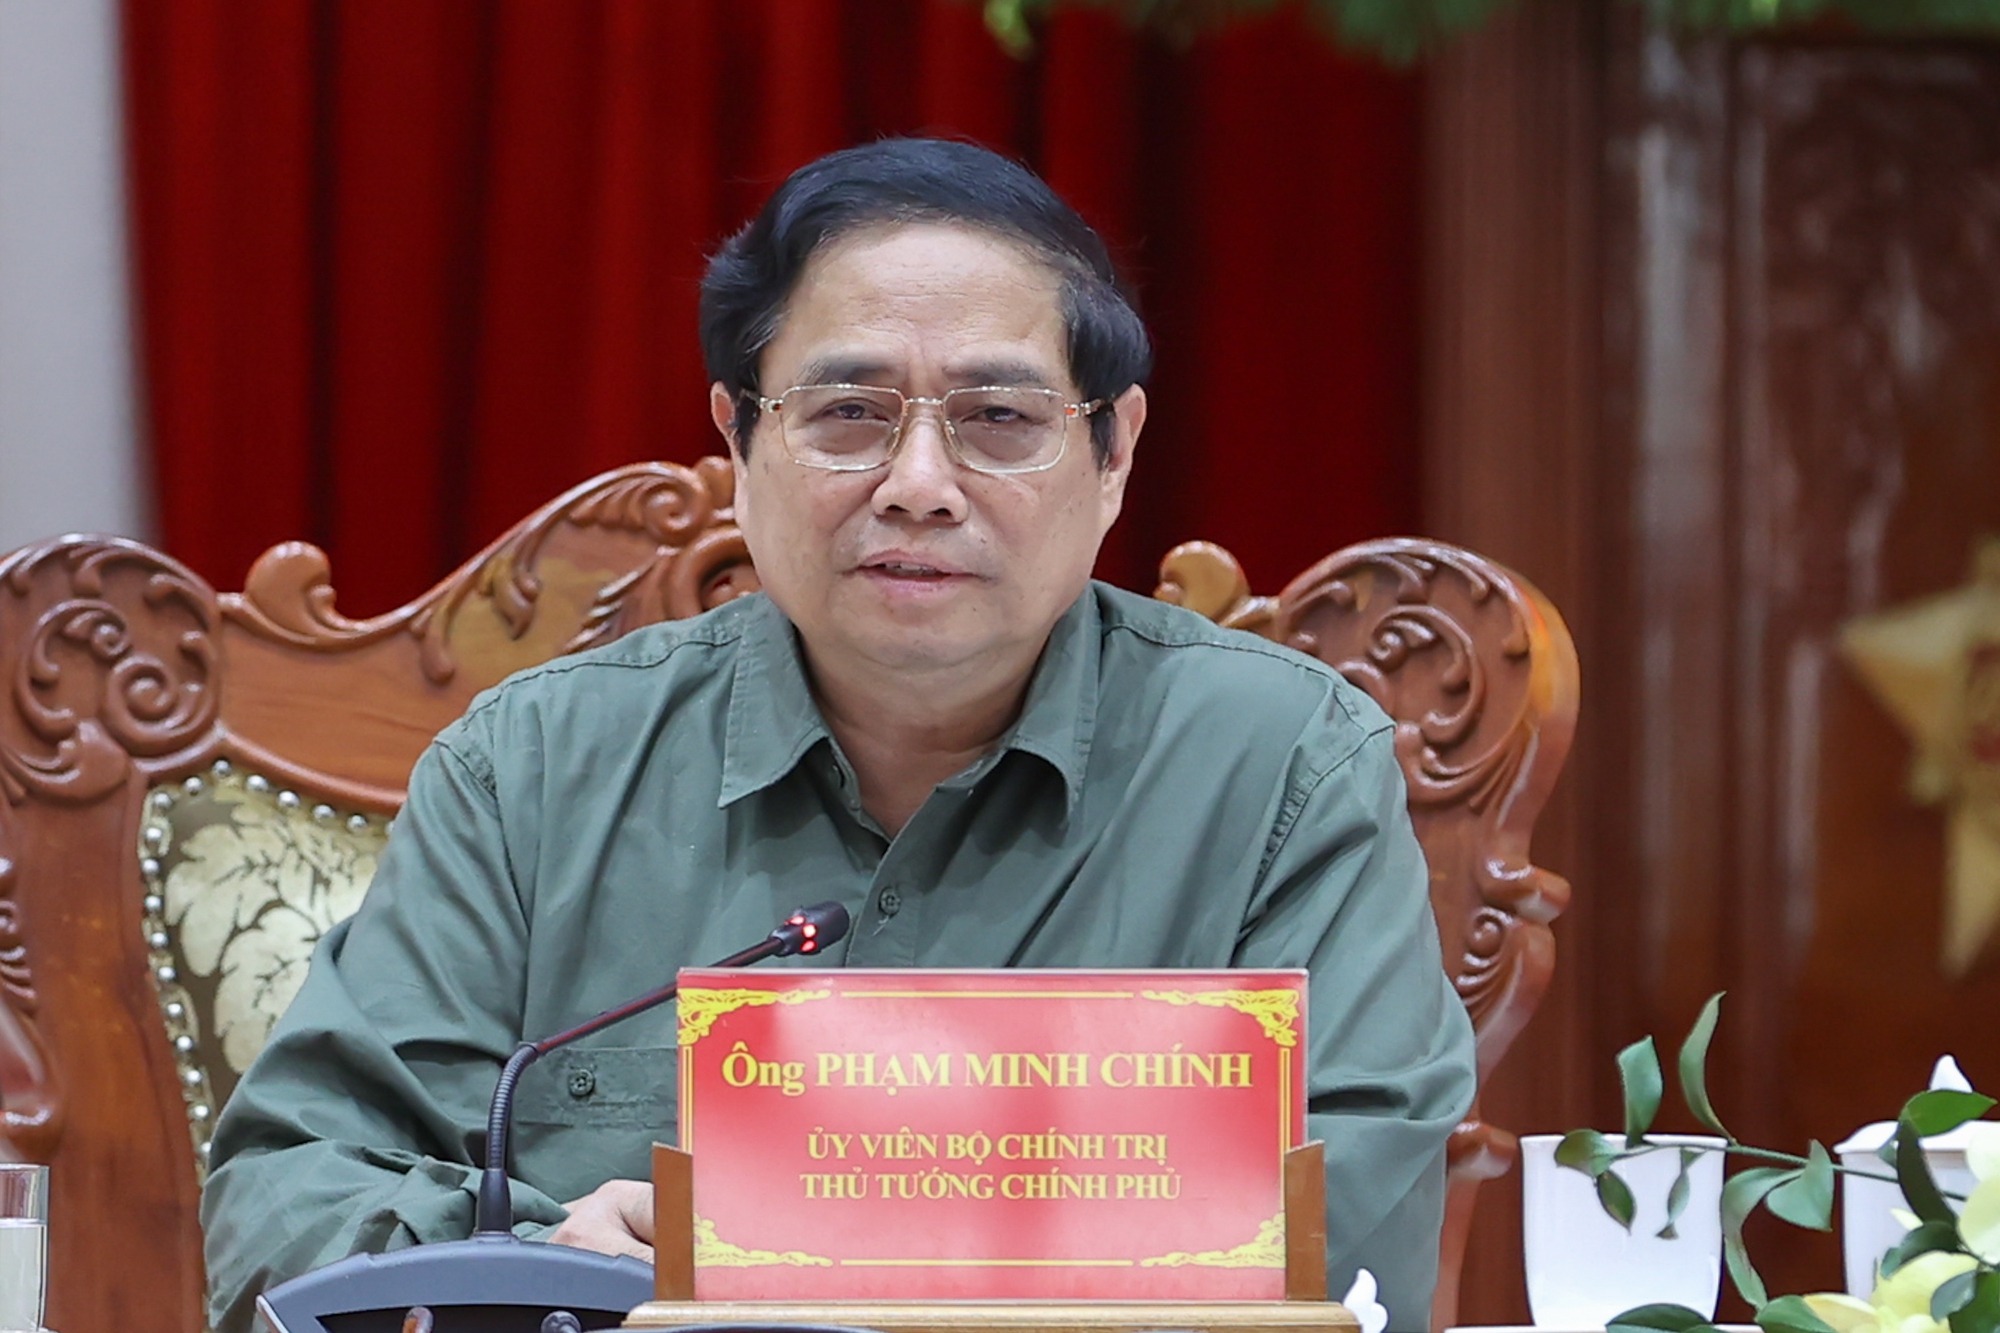 Giải quyết một số kiến nghị của tỉnh Tiền Giang, Thủ tướng nhấn mạnh: ""Những vấn đề liên quan tính mạng người dân phải xử lý ngay" - Ảnh VGP/Nhật Bắc